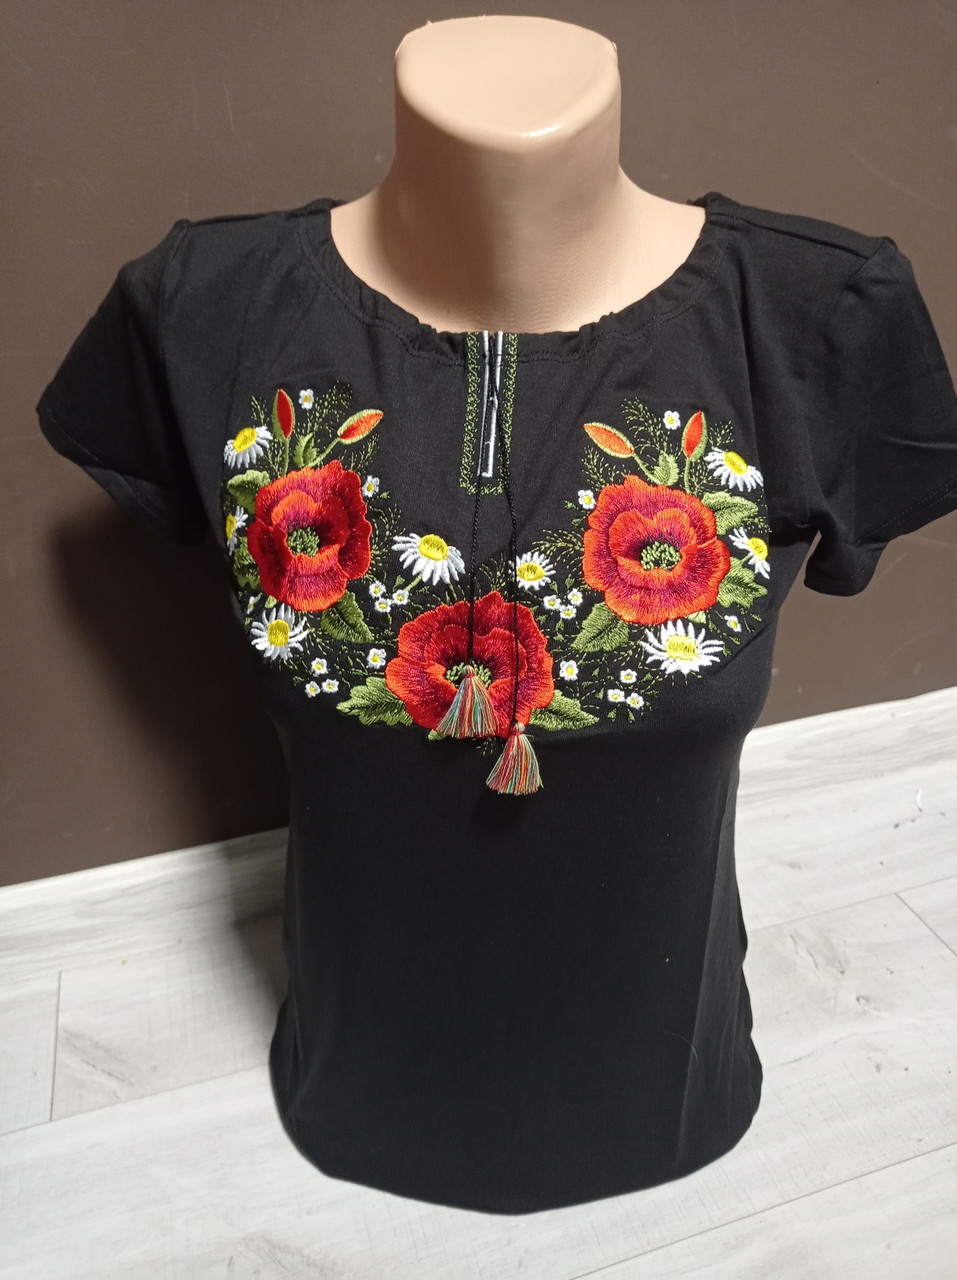 Жіноча чорна блузка з вишивкою Україна УкраїнаТД 40-46 розміри